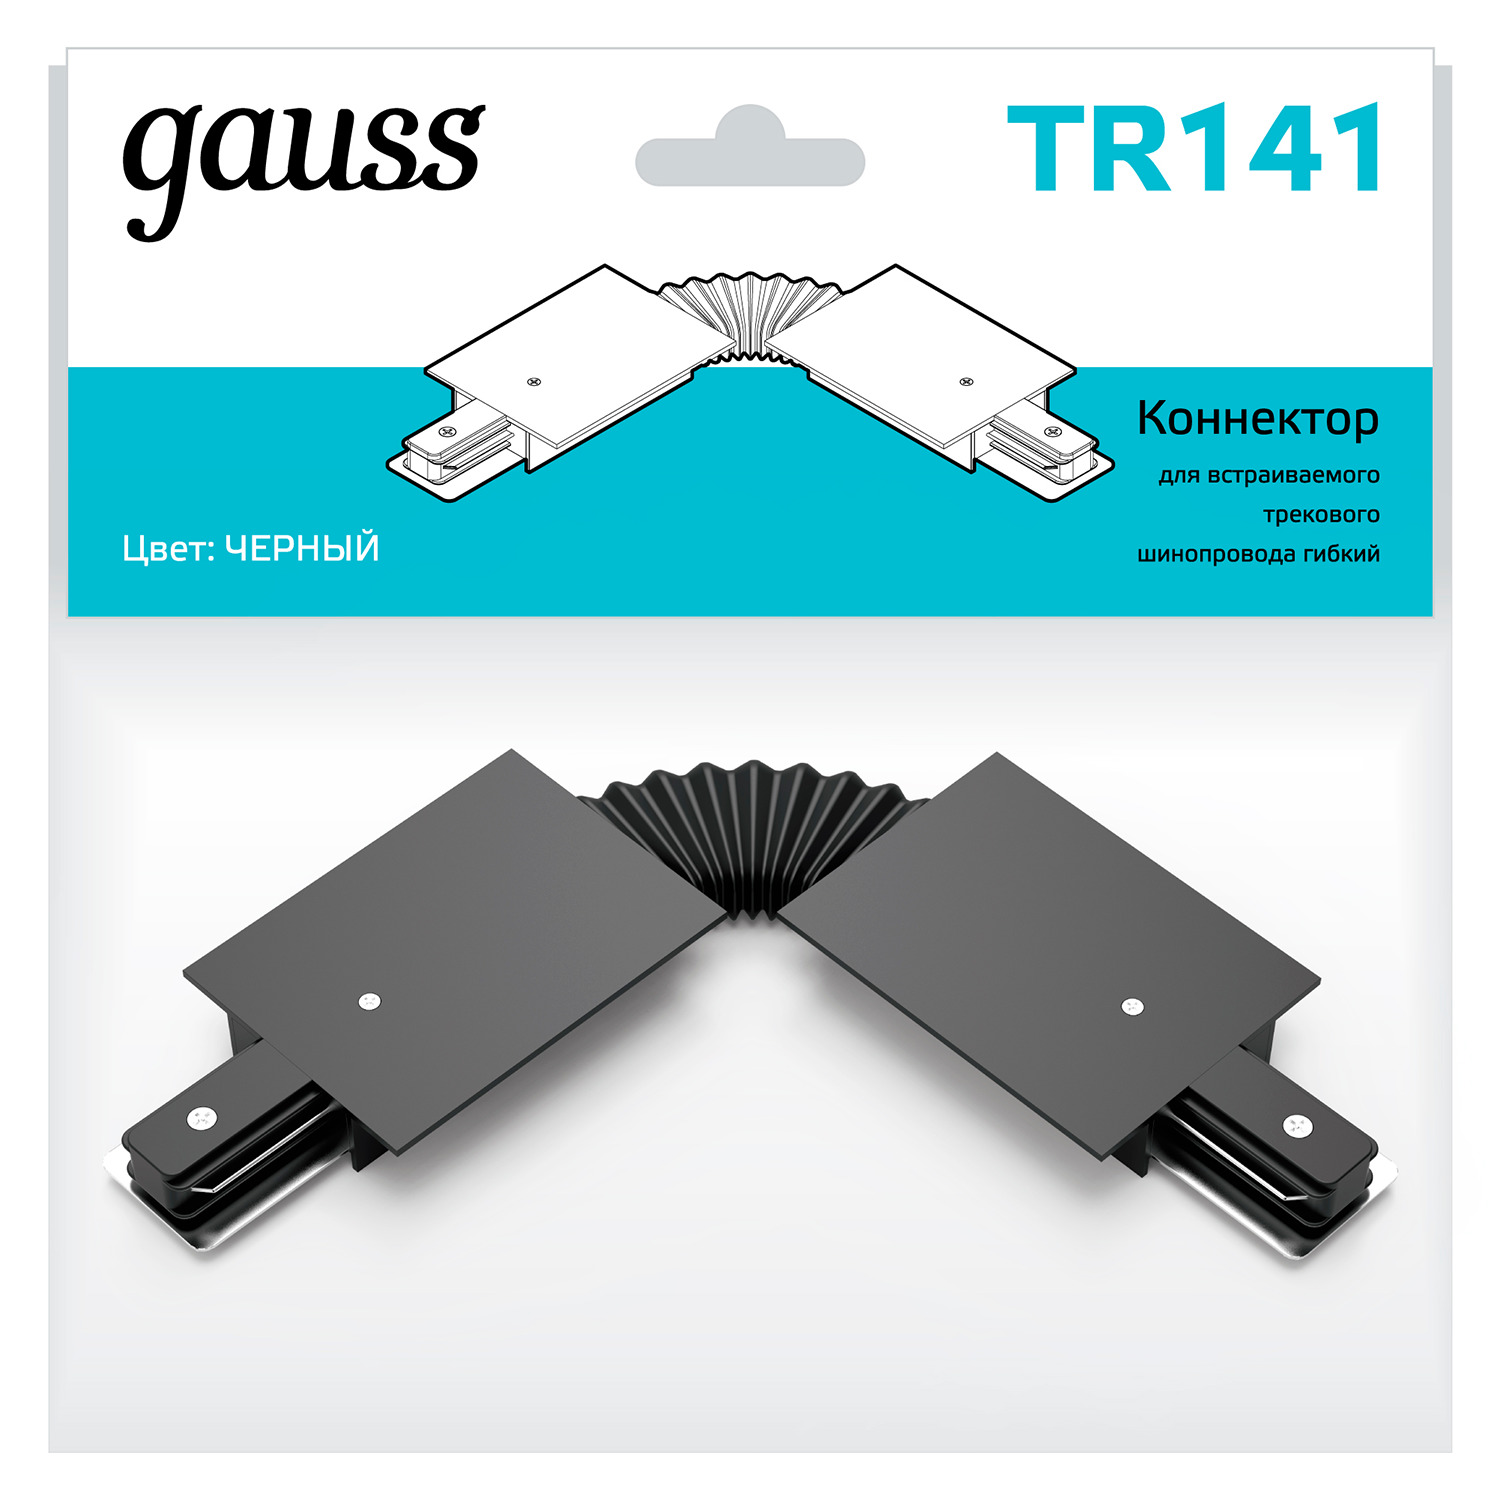 Коннектор Gauss для встраиваемых трековых шинопроводов гибкий (I) черный гибкий коннектор для трековых шинопроводов gauss